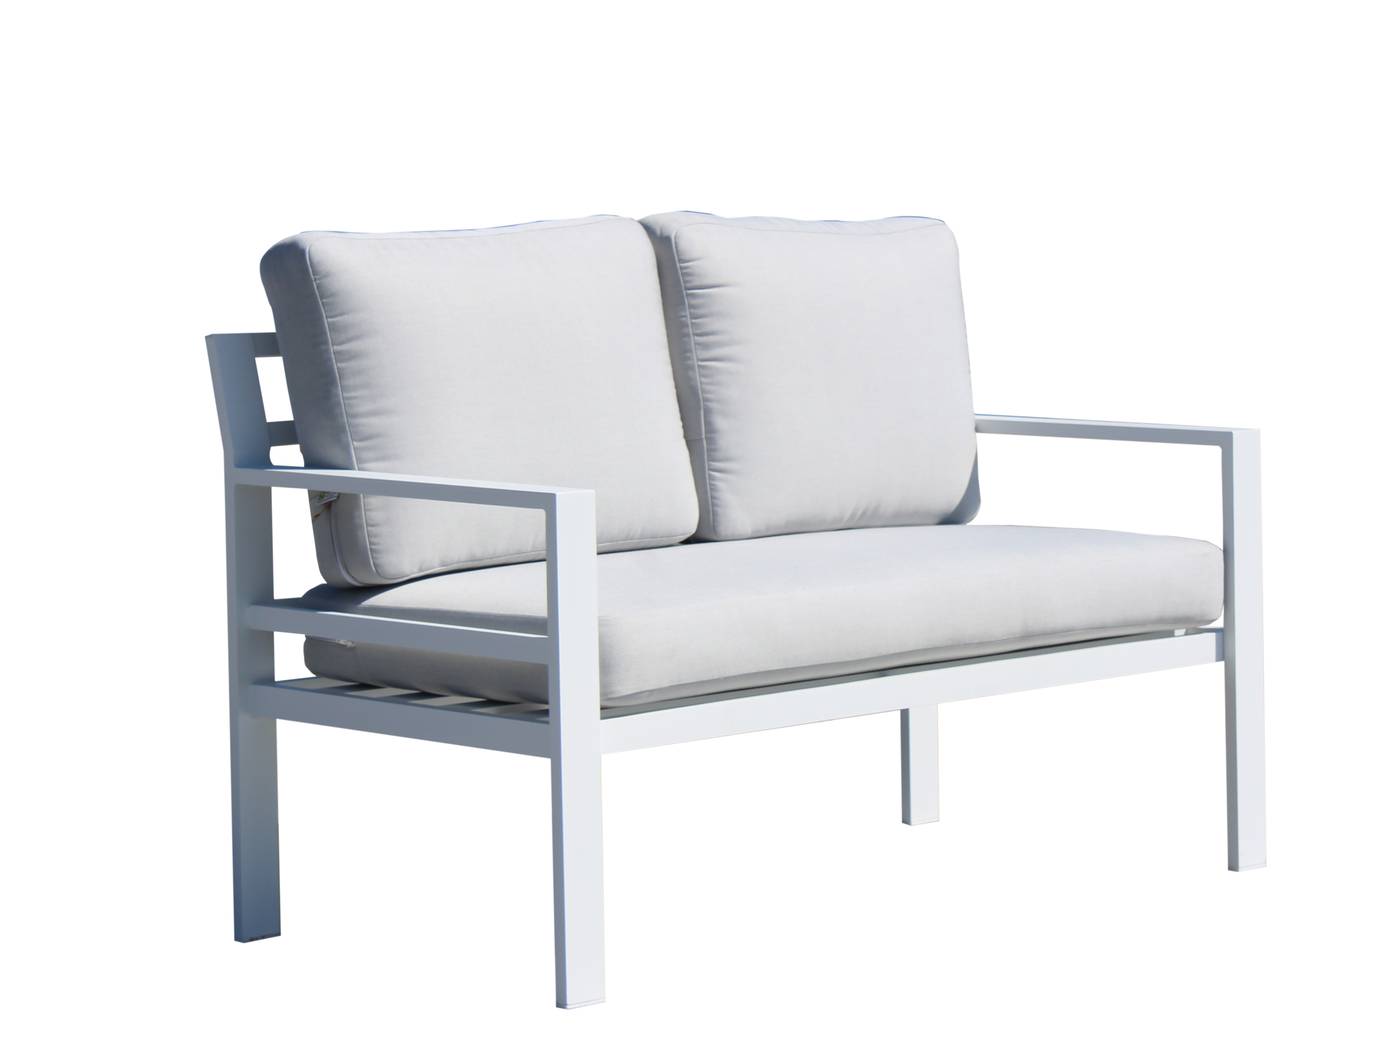 Sofá 2 plazas con cojines gran confort. Estructura de aluminio  de color blanco, antracita, champagne, plata o marrón.